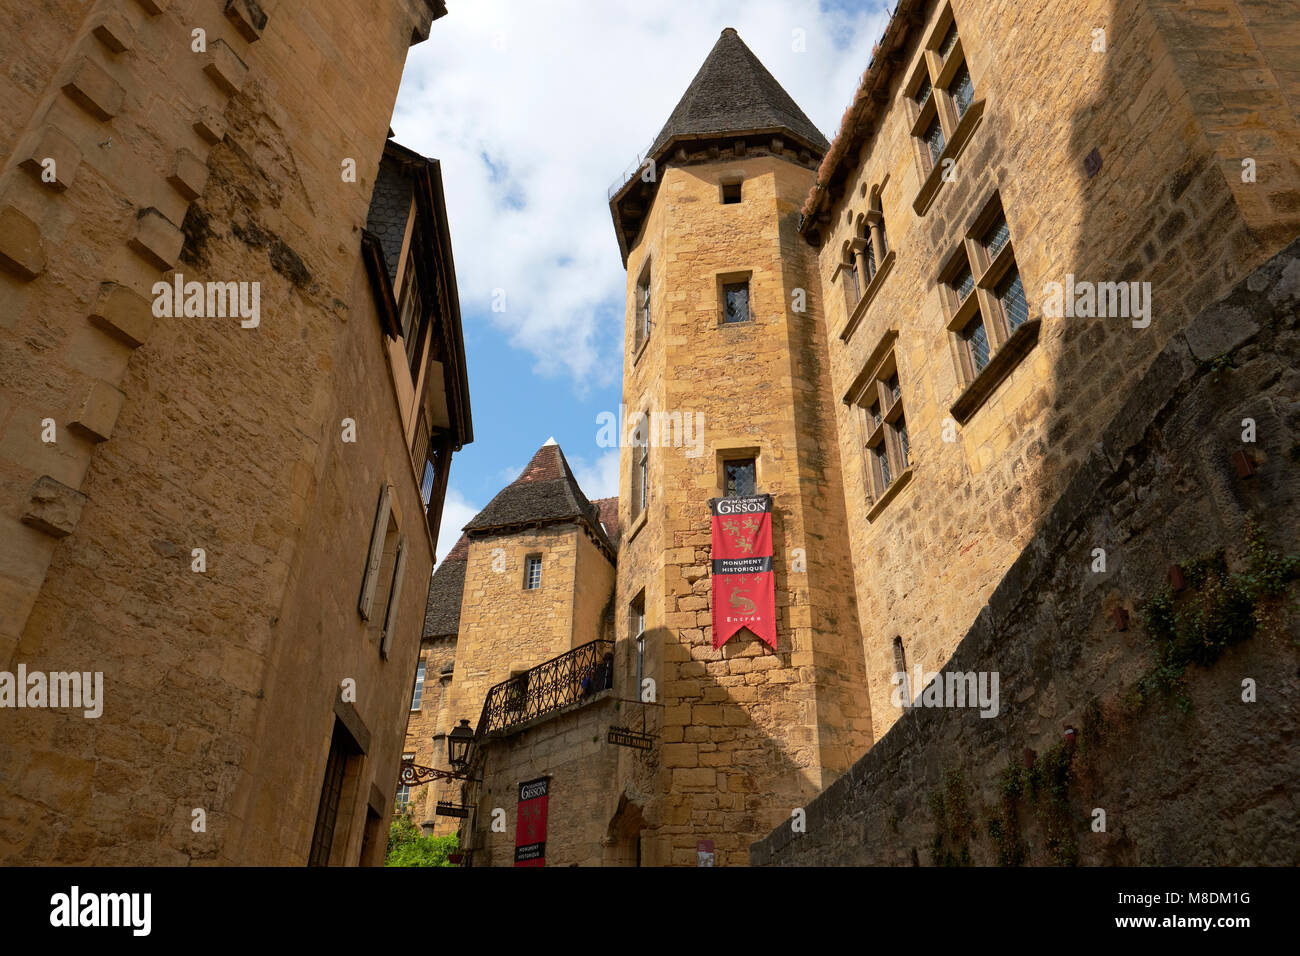 Das Manoir de Patrizierhaus Gisson in der mittelalterlichen Stadt Sarlat la Caneda in der Region Périgord Noir der Dordogne, Frankreich. Stockfoto